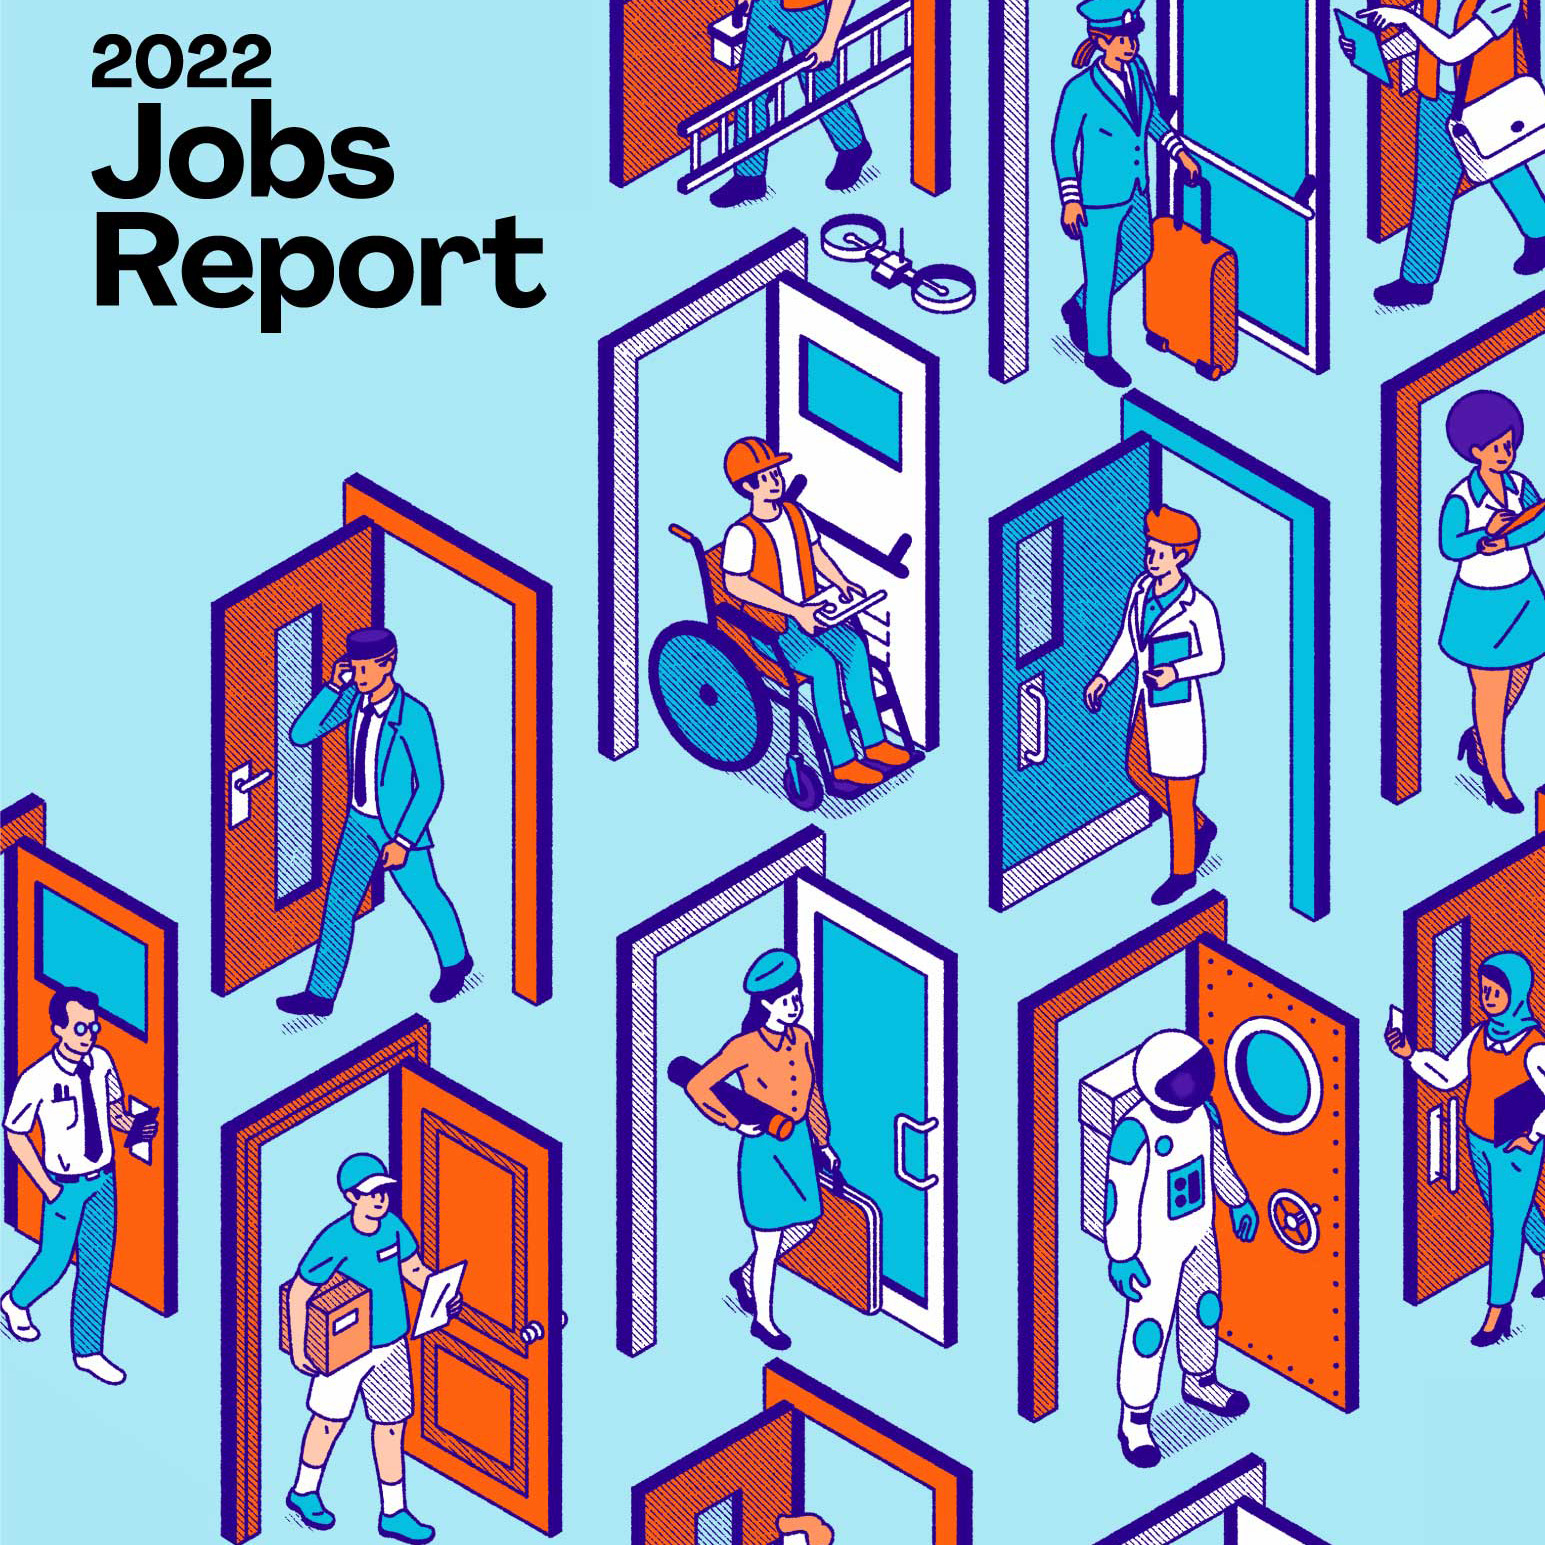 2022 Jobs Report